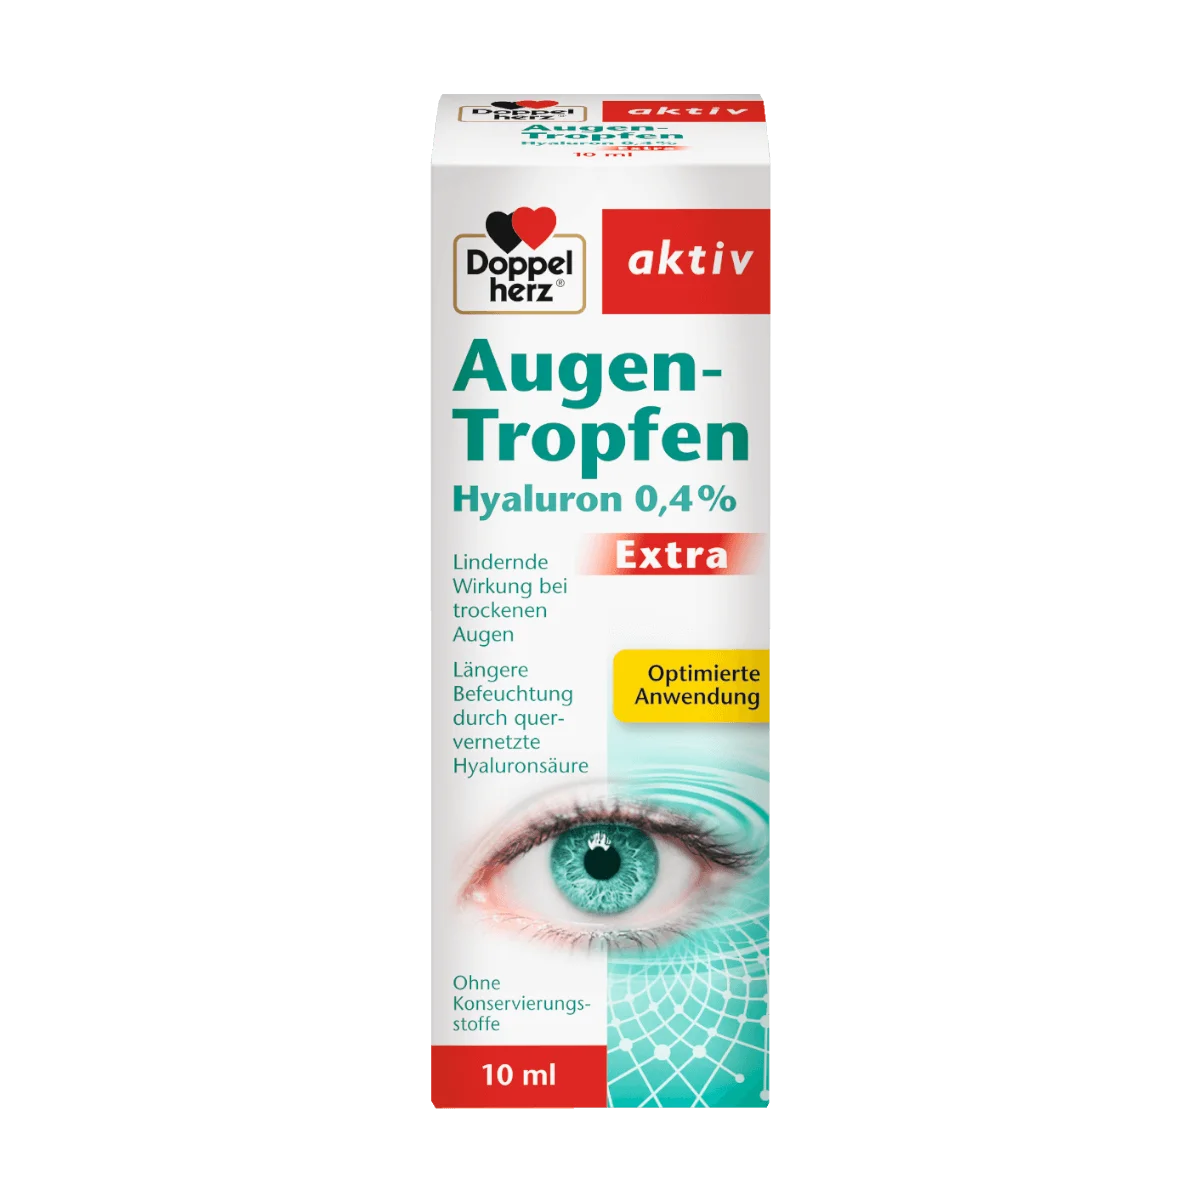 Doppelherz Augen-Tropfen Hyaluron 0,4%, 10 ml